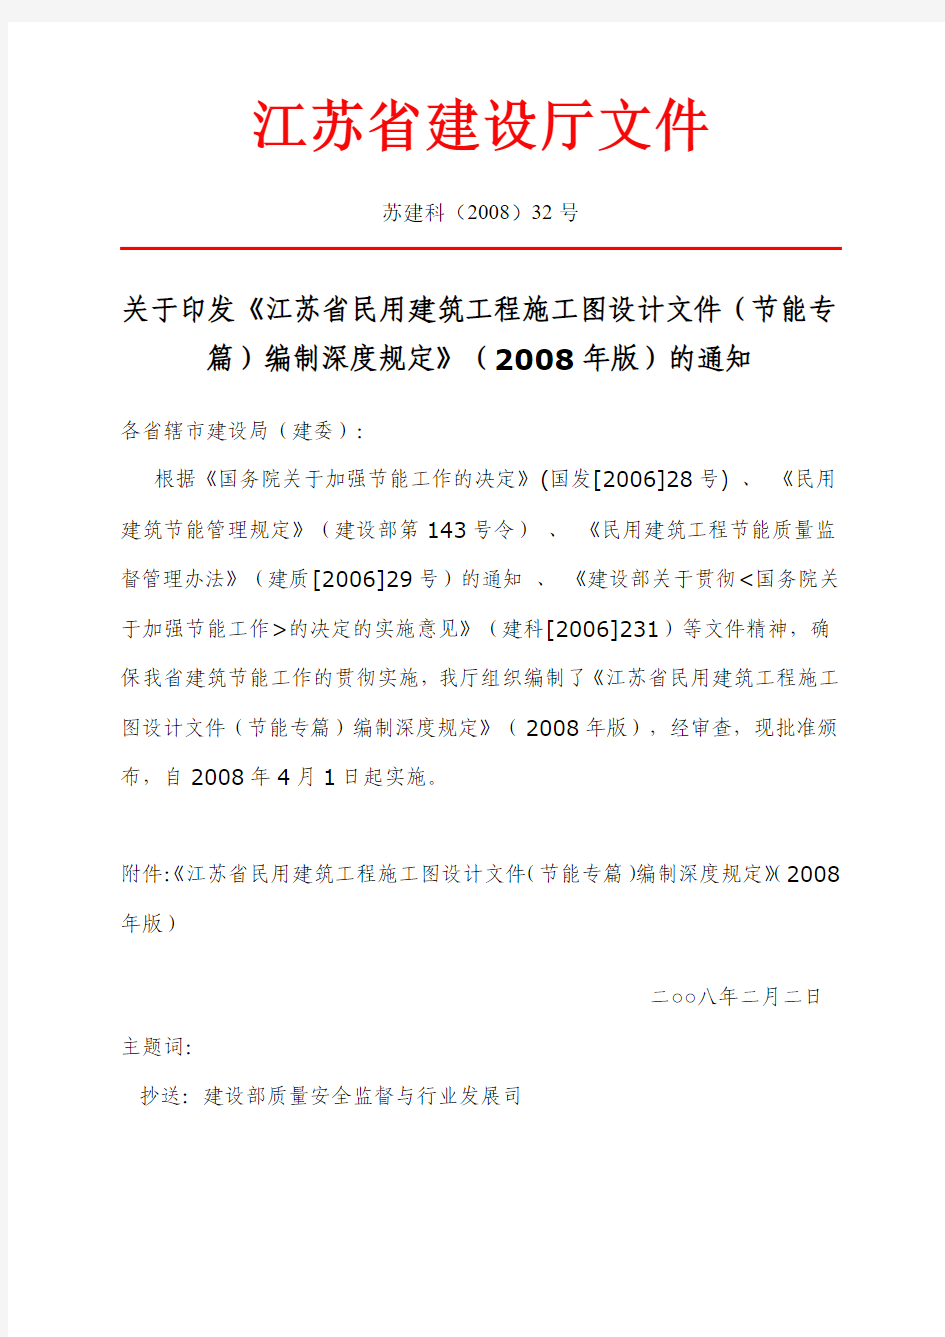 《江苏省民用建筑工程施工图设计文件(节能专篇)编制深度规定》(2008年版)